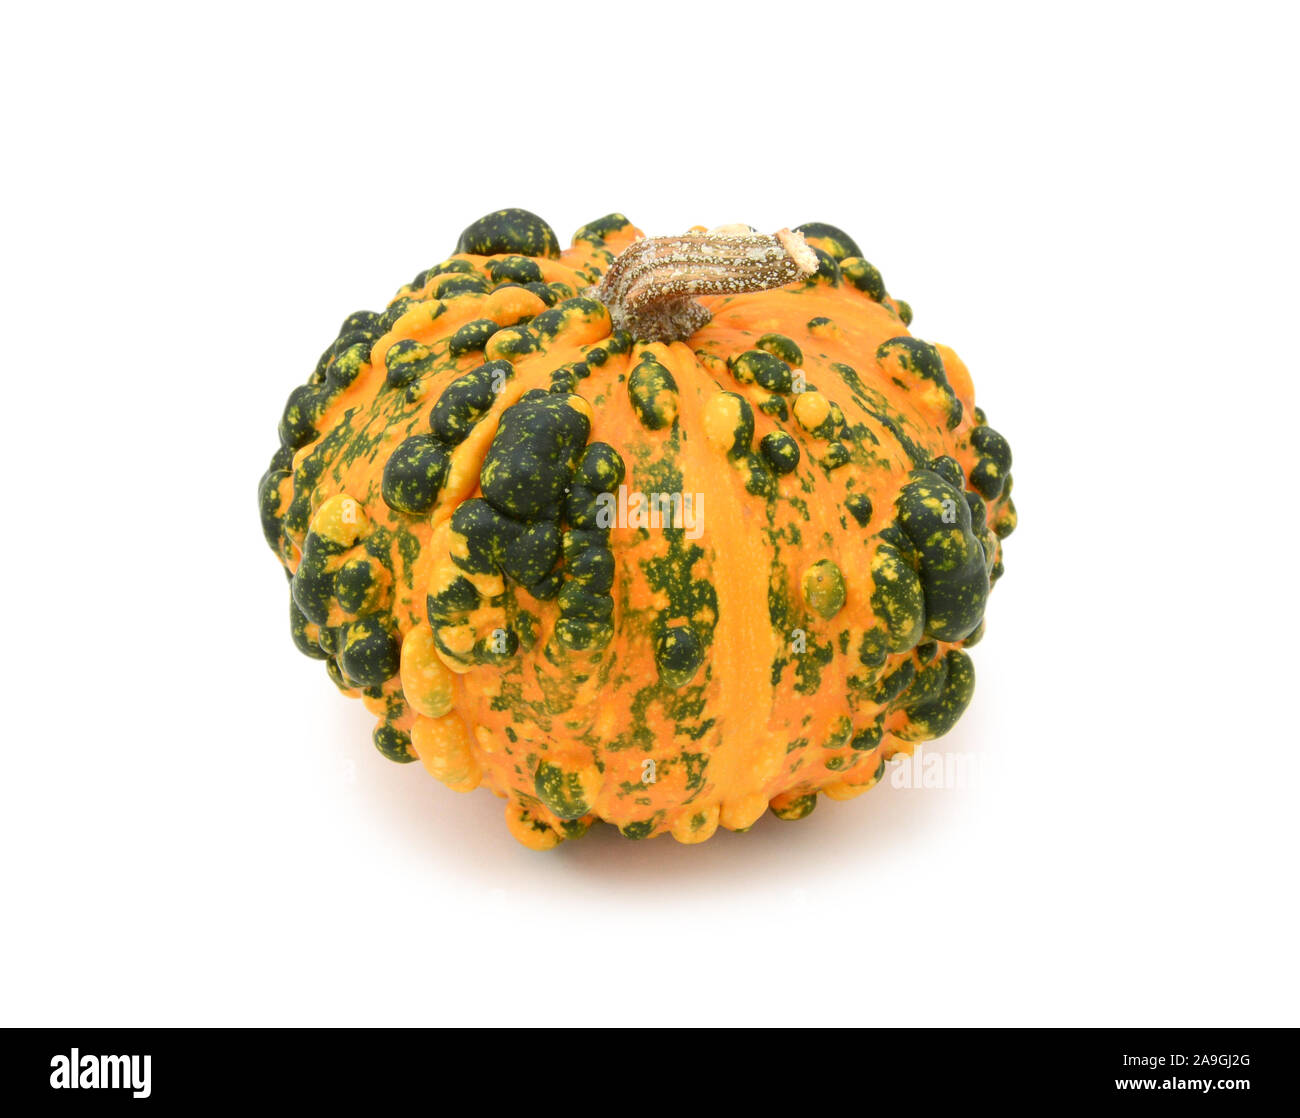 Ornementales warted inhabituelle gourd avec orange et vert foncé de la peau, des marques sur un fond blanc Banque D'Images